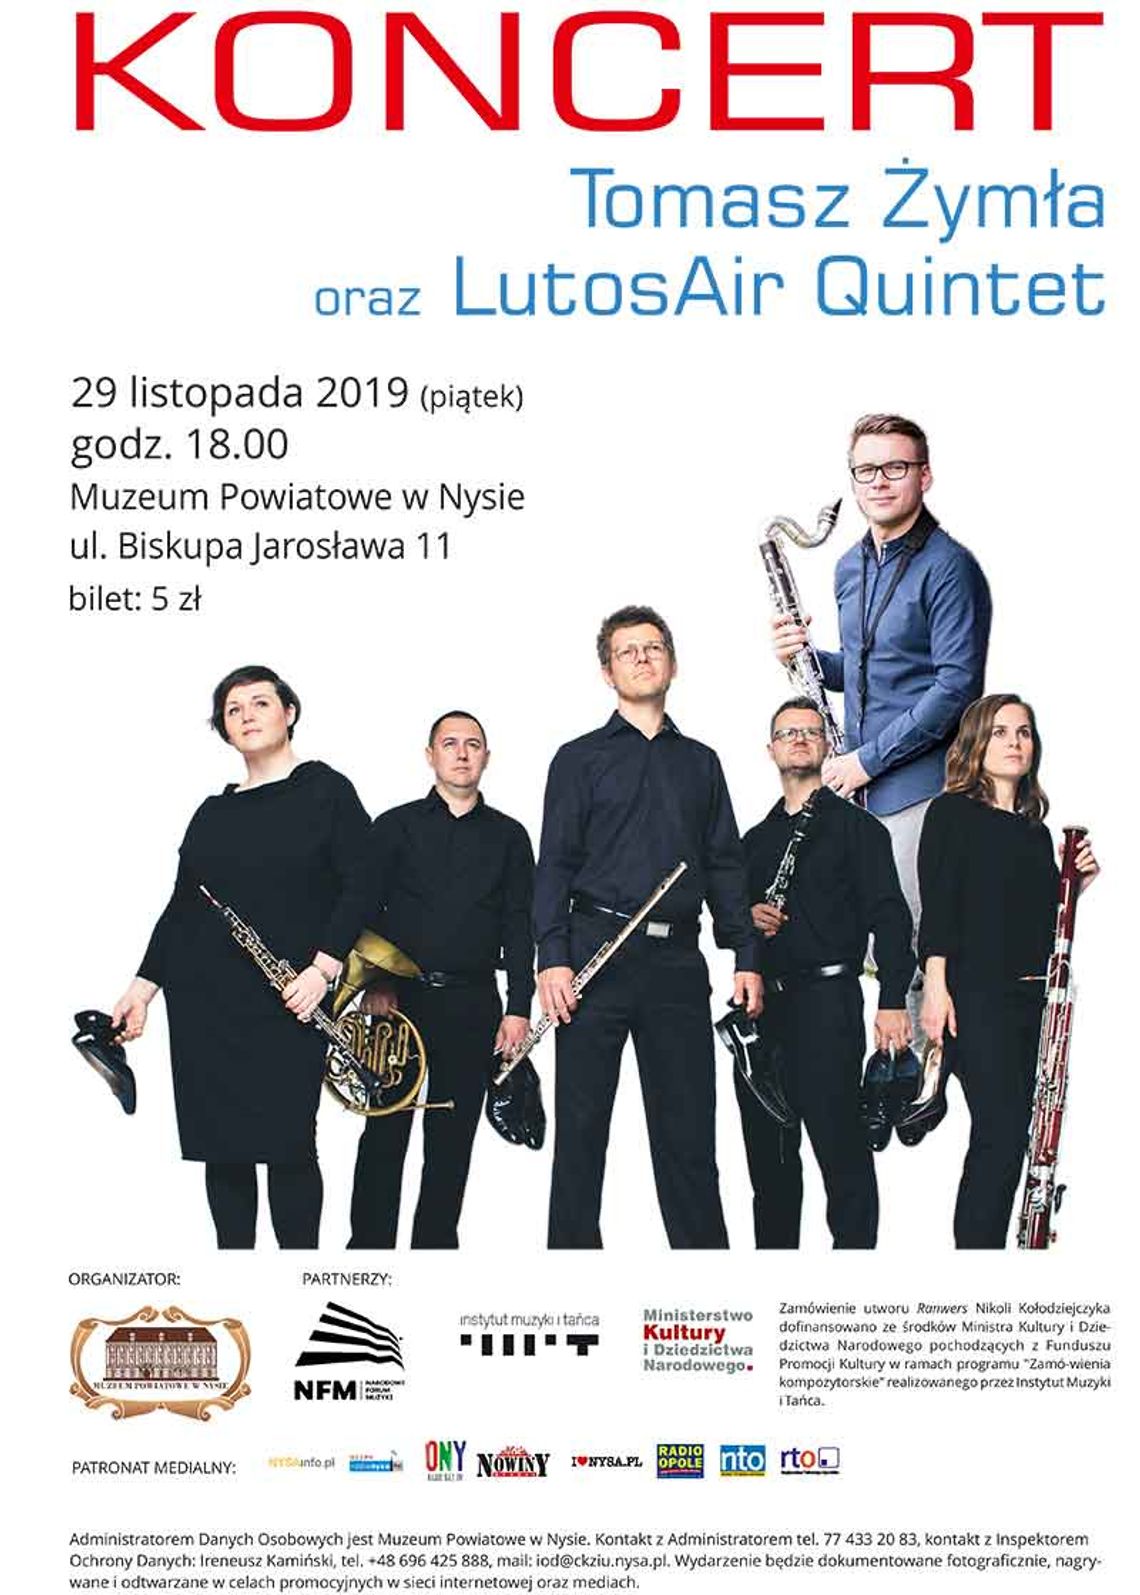 koncert w Muzeum - Tomasz Żymła oraz LutosAir Quintet, bilet 5 zł